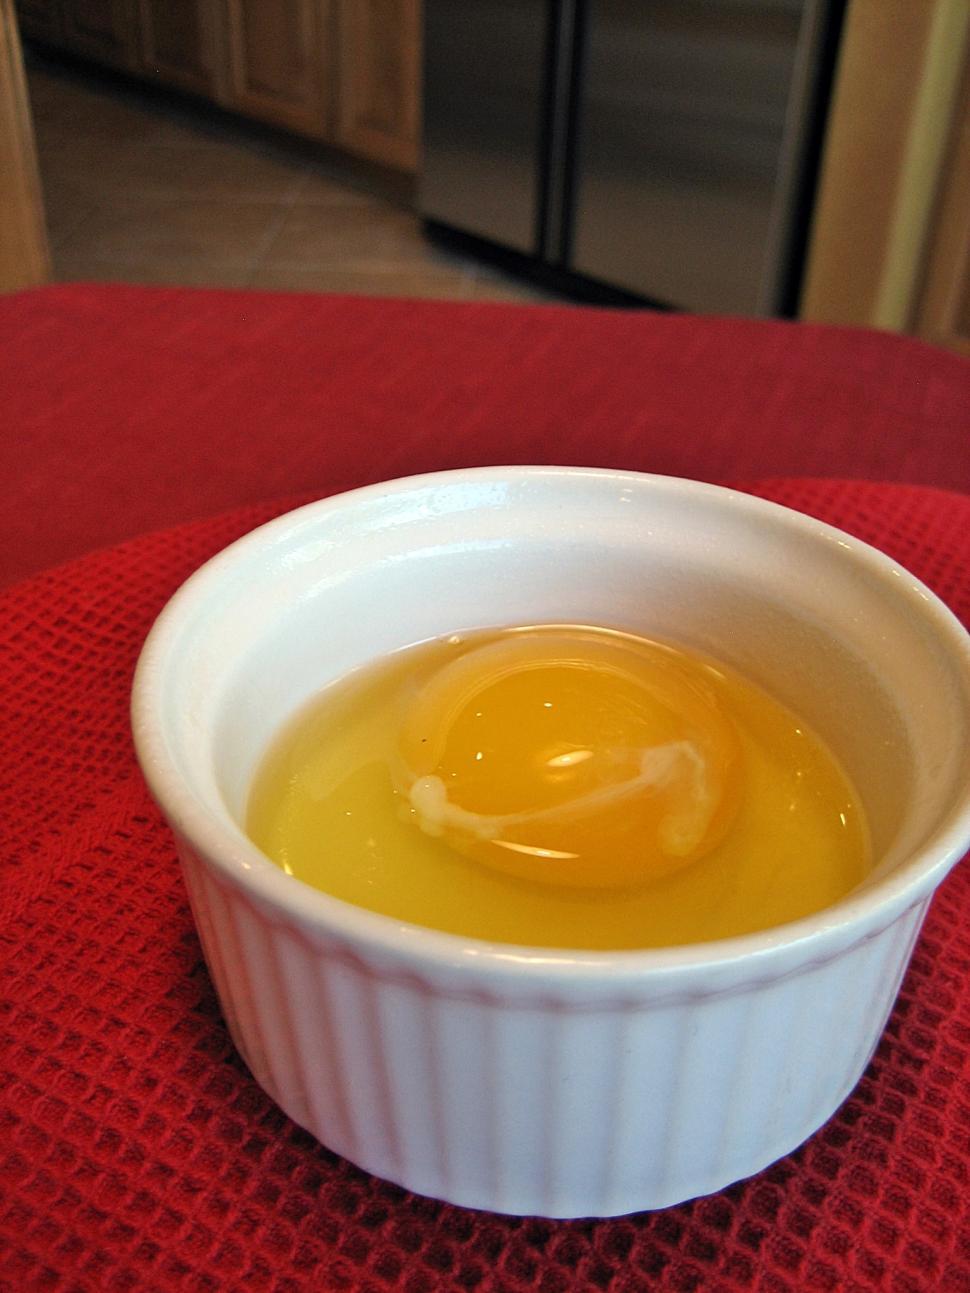 Free Image of Raw Egg in Ramekin 